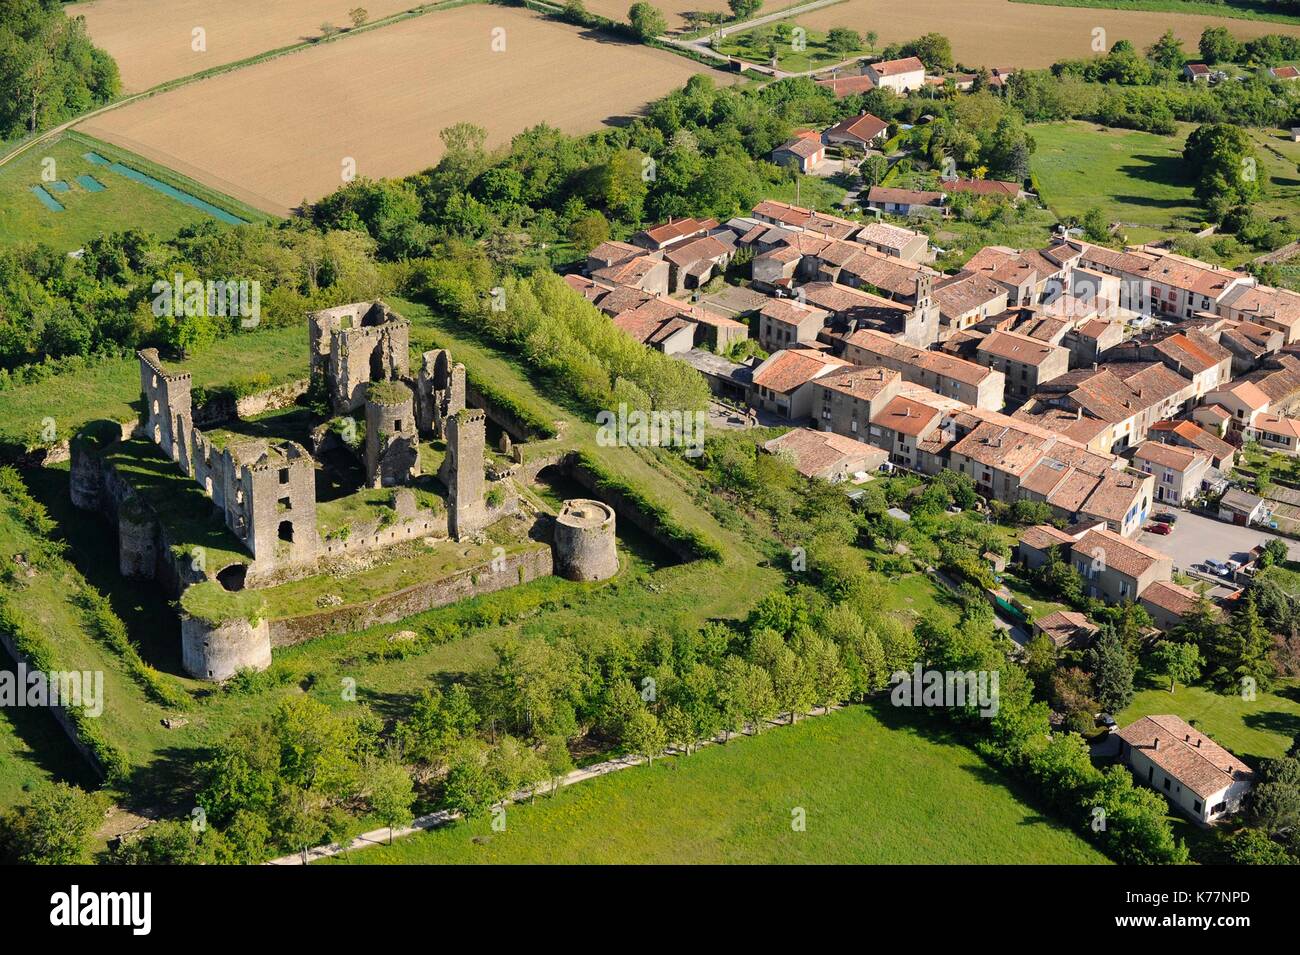 La France, l'Ariège, Lagarde, le château de Lagarde est situé en Ariège,  près de Mirepoix, construit sur une colline surplombant la vallée de l'Hers  Vif (vue aérienne Photo Stock - Alamy